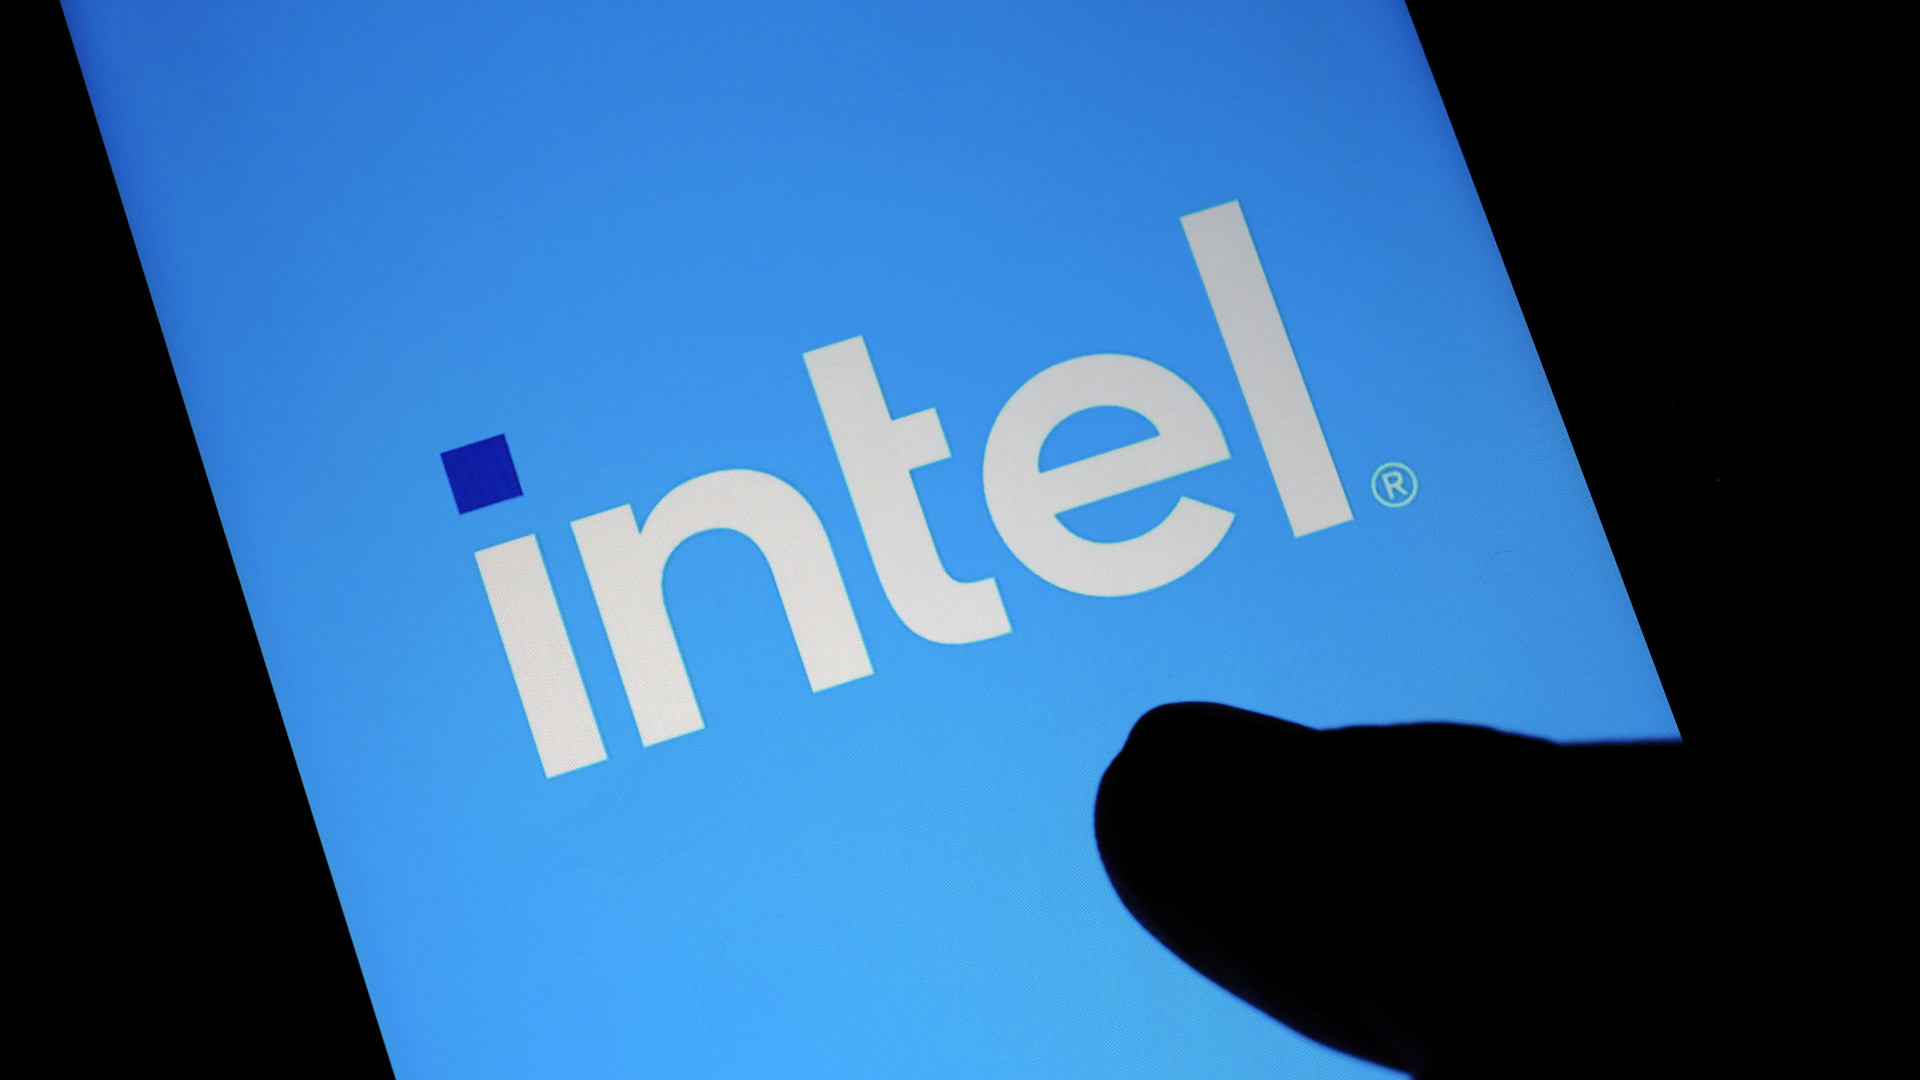 Nowe sterowniki Intela to prawie dwukrotny wzrost wydajności w grach